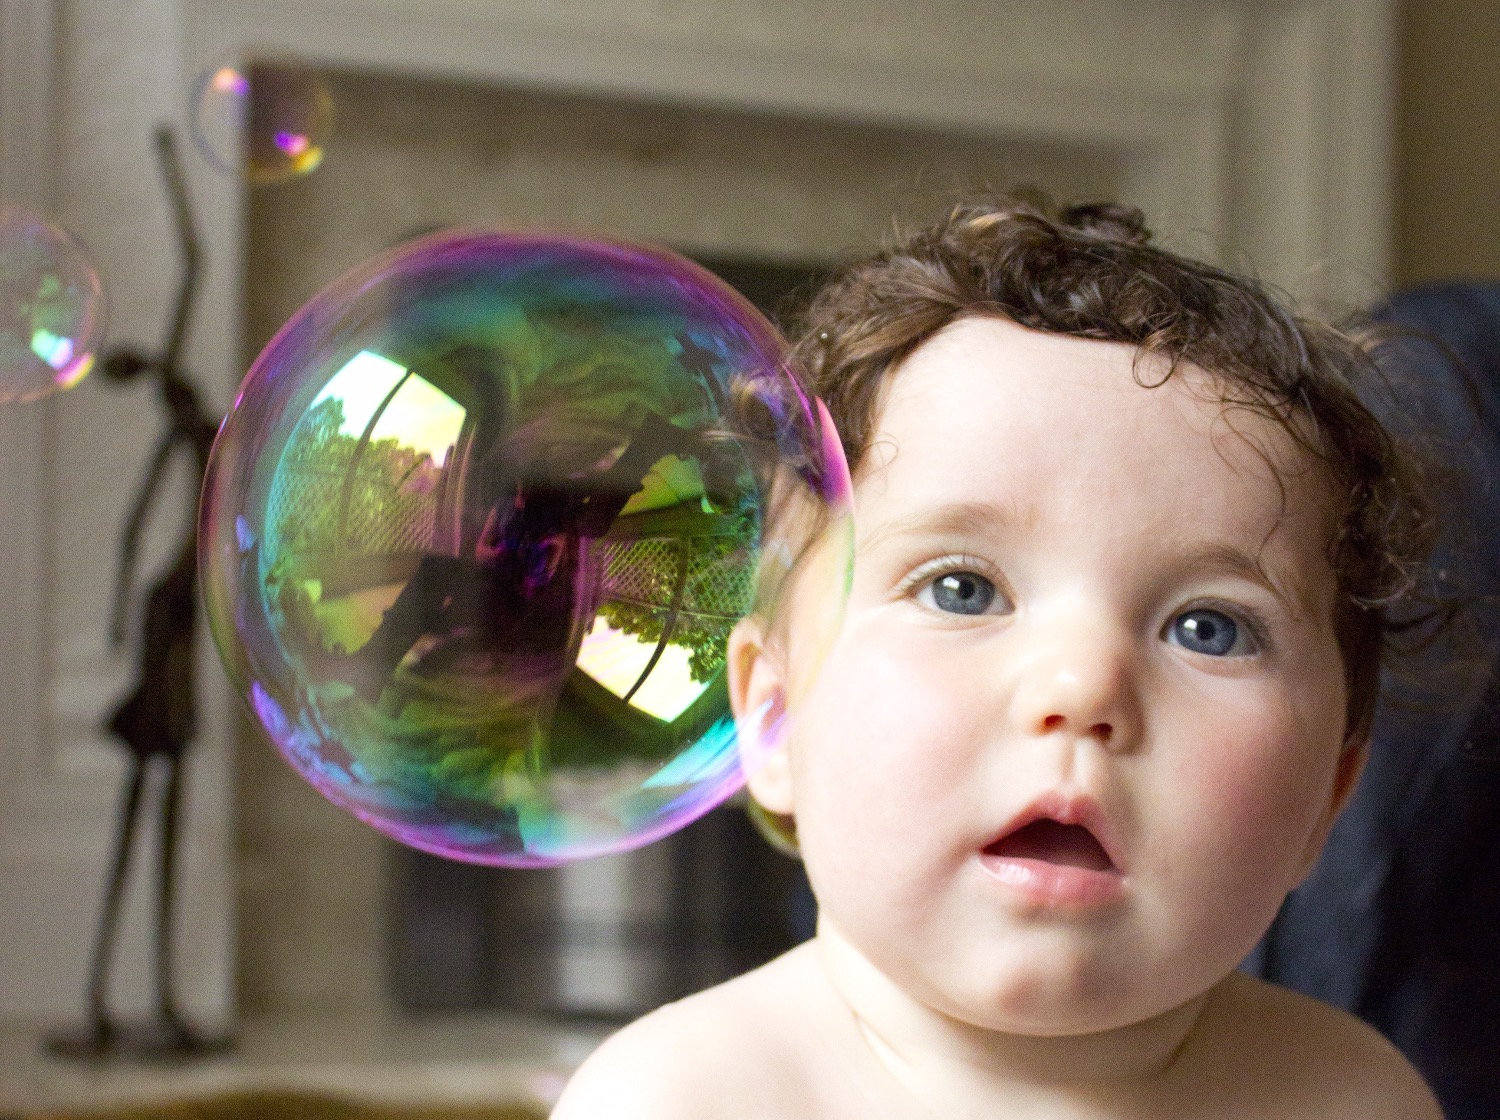 Titelbild zur Idee für die Beschäftigung mit Kindern 'Seifenblasen bewundern oder fangen'